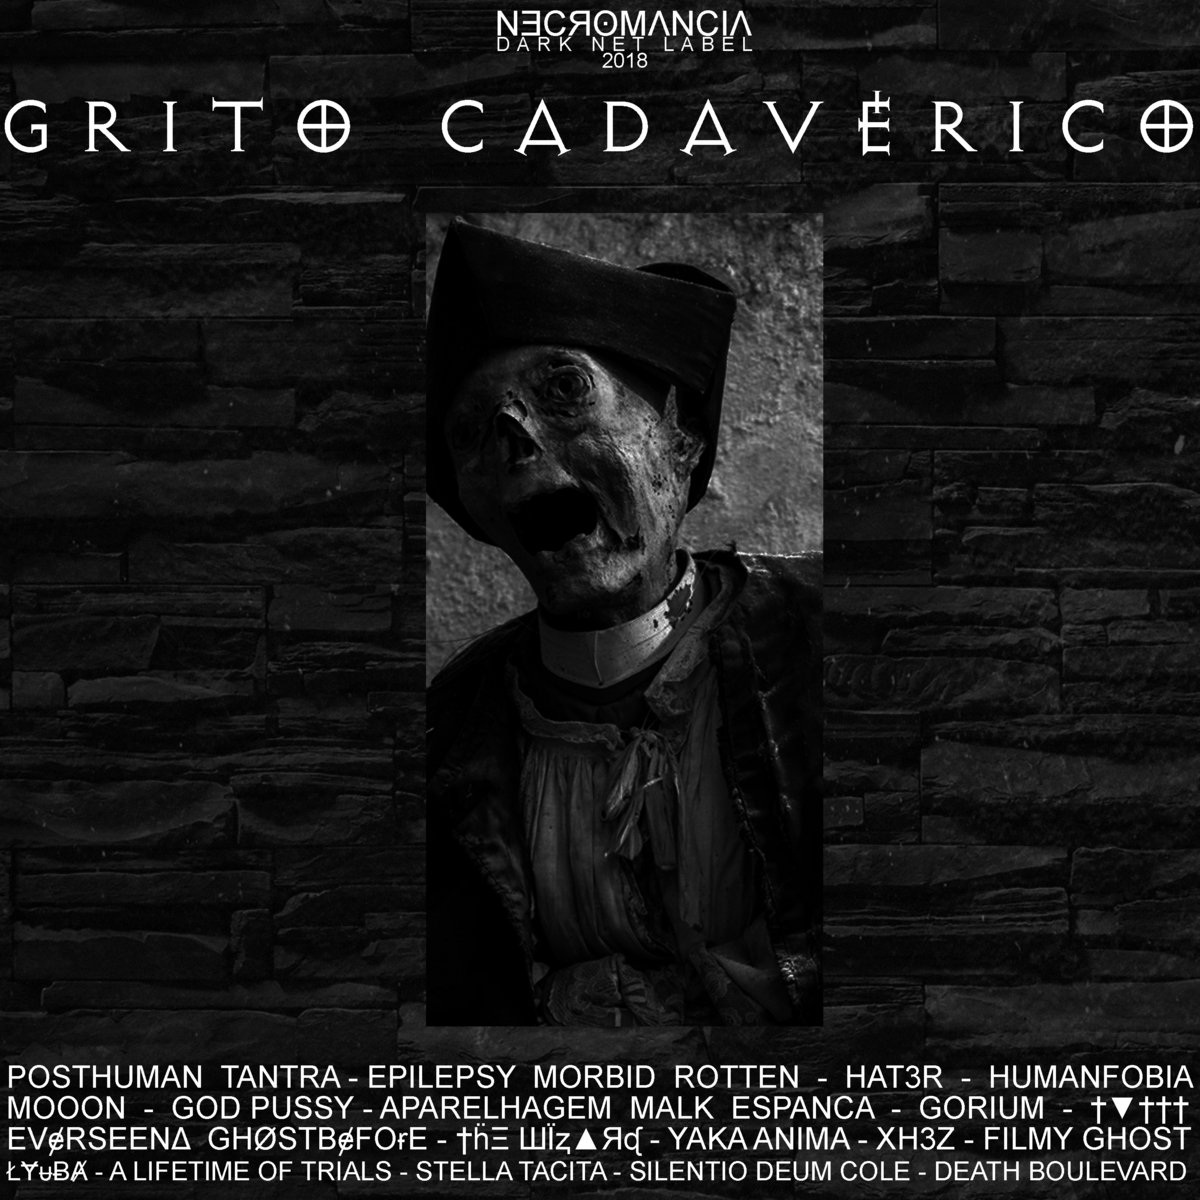 https://necromancia-darknet.bandcamp.com/album/grito-cadav-rico-v-a-nm-010